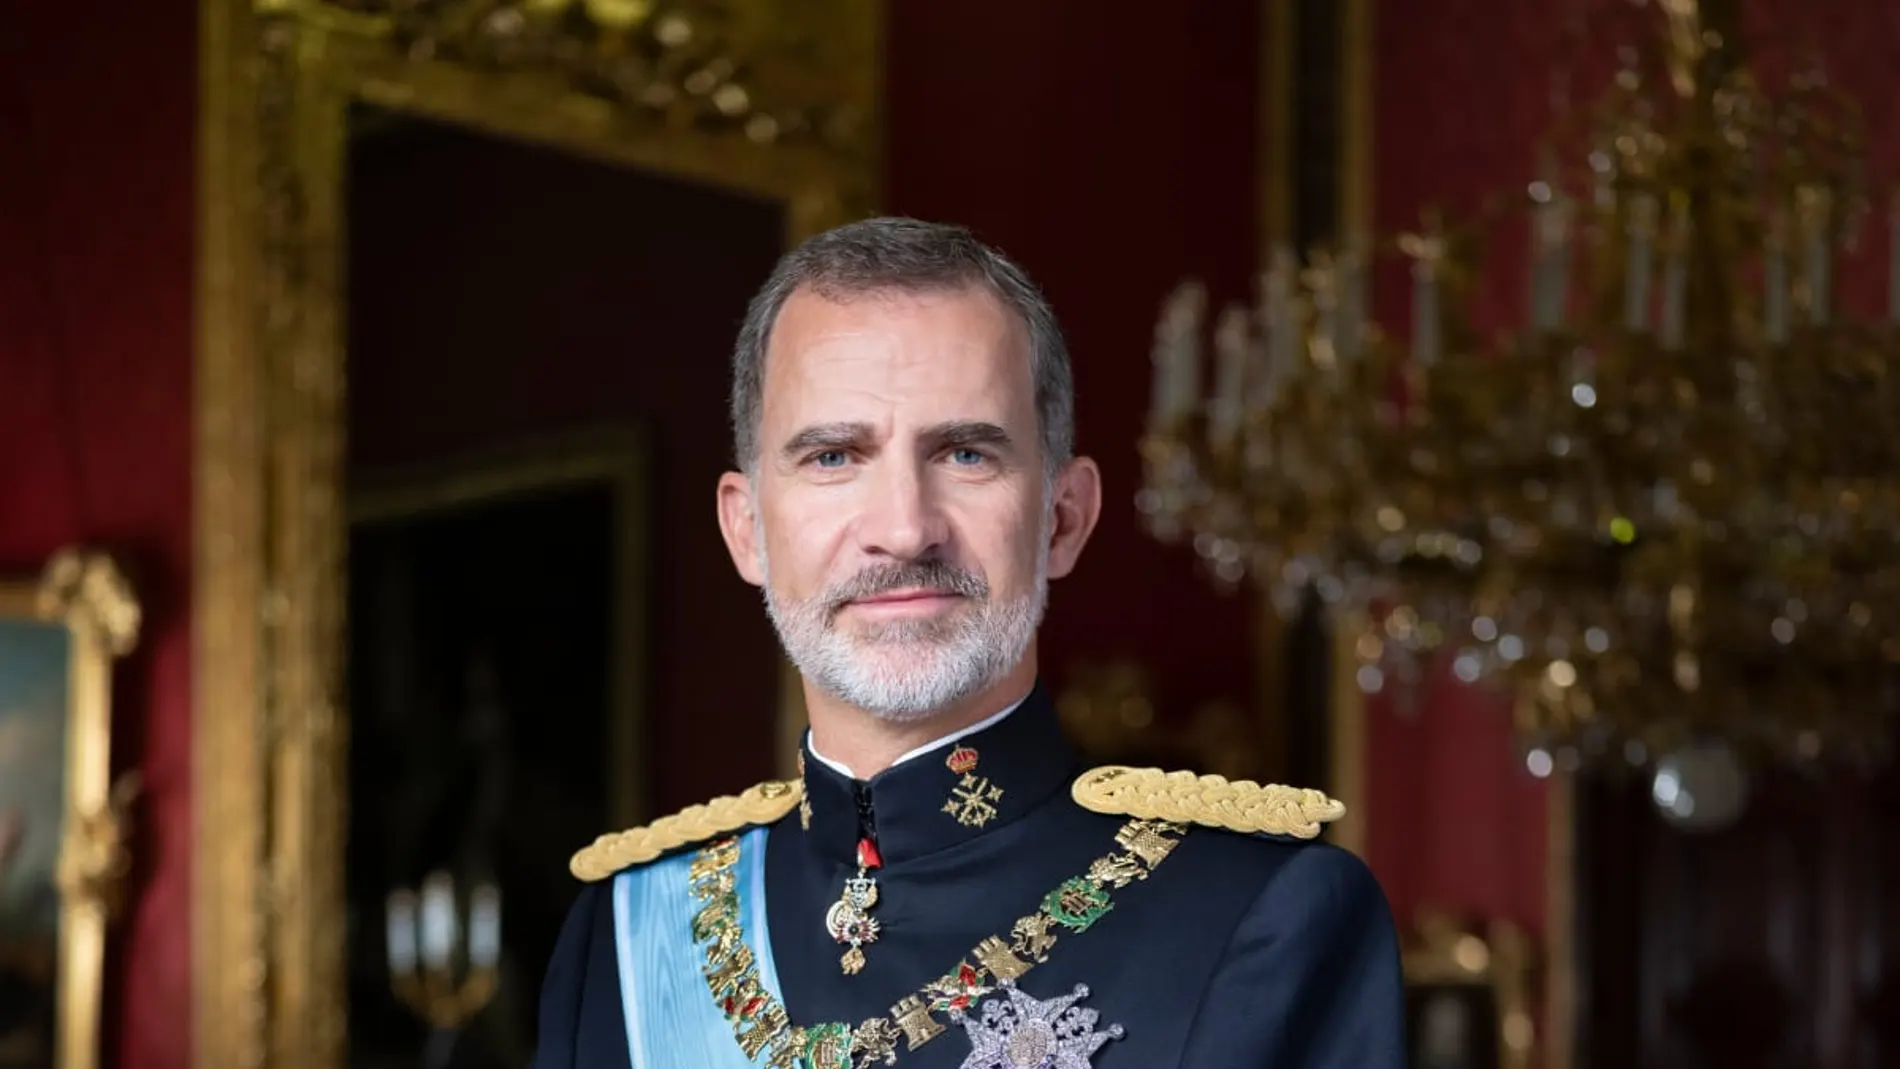 Retrato oficial del Rey Felipe VI